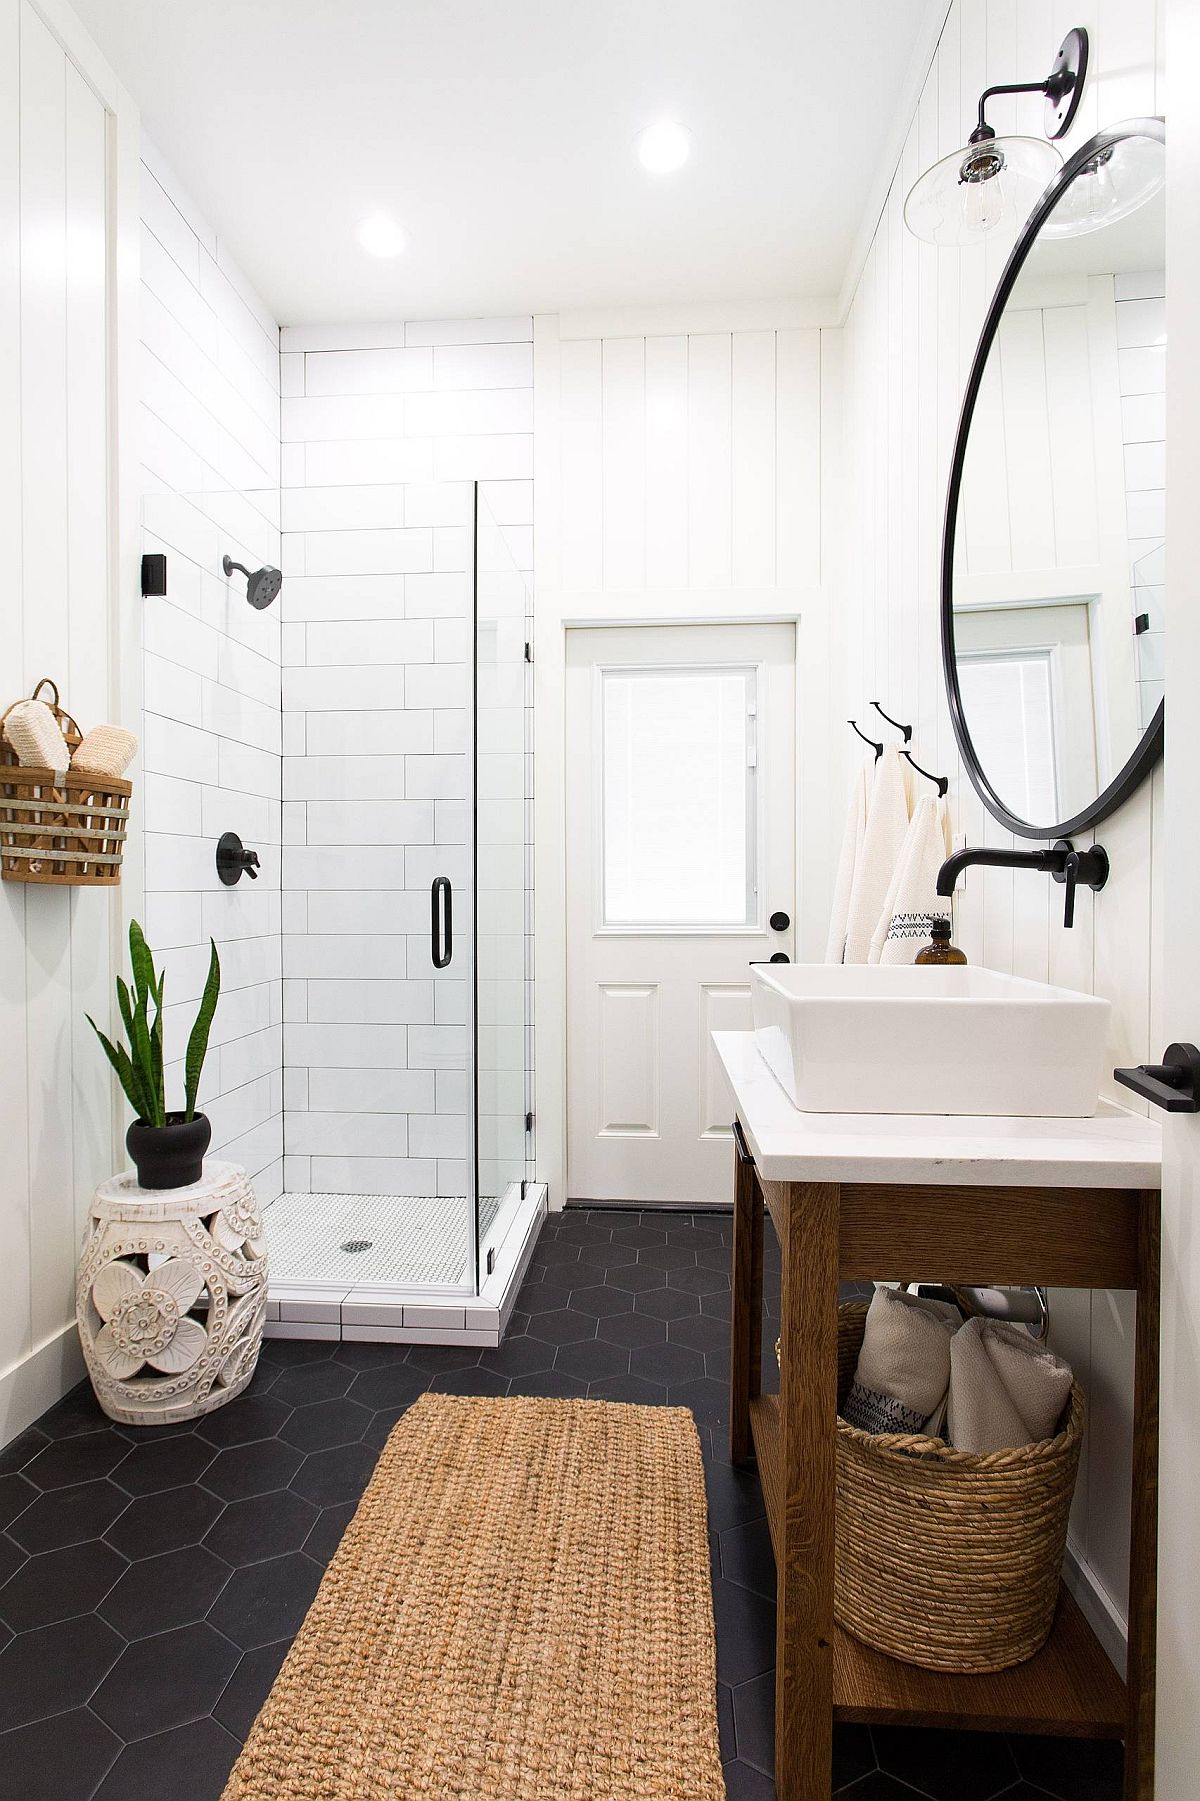 Give Your Home A Sparkling Black Floor, Black Tile Bathroom Floor Images